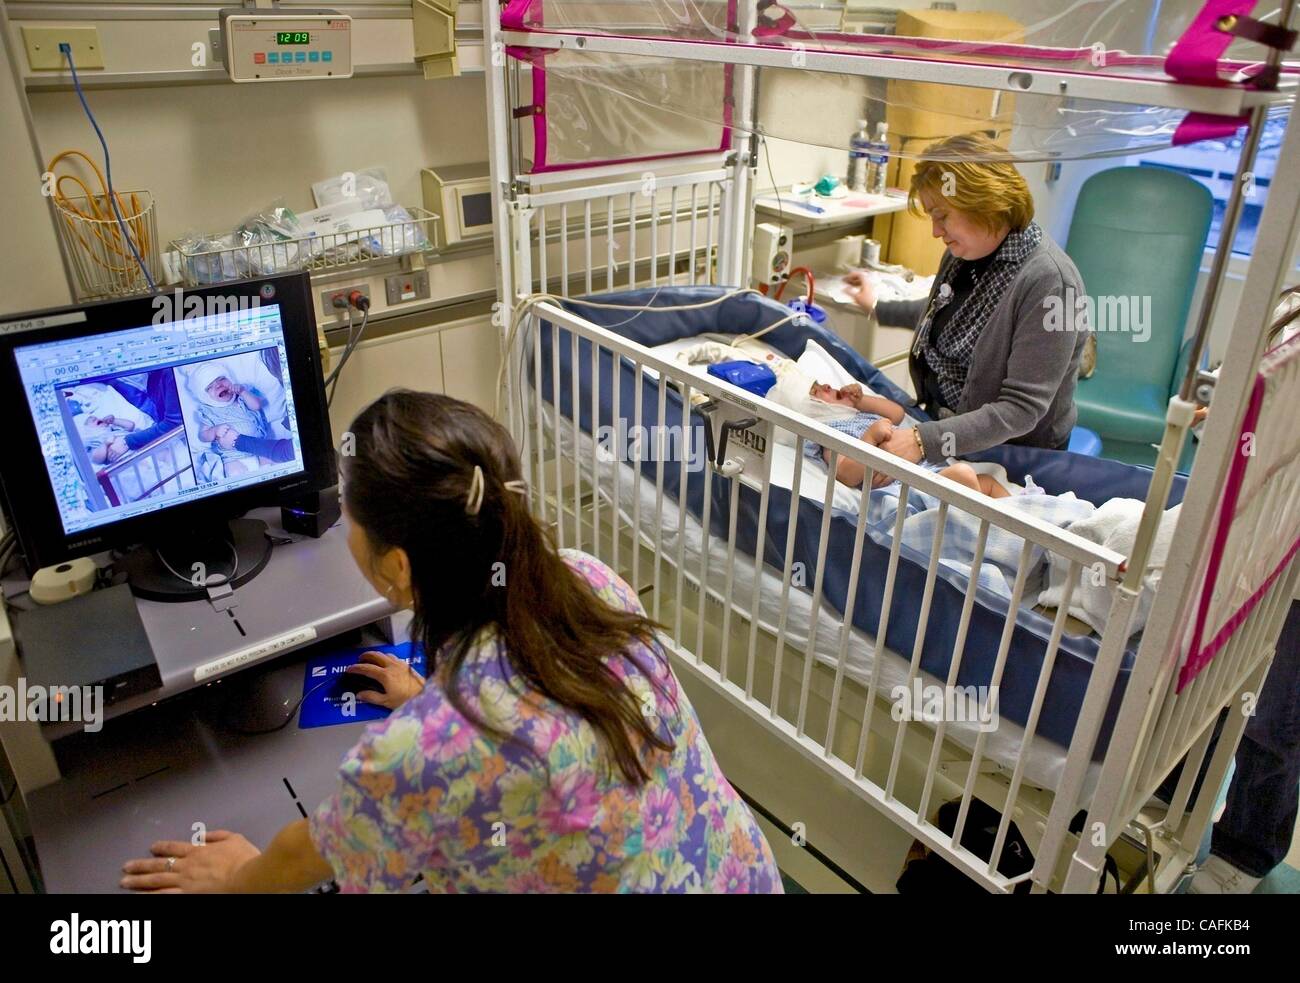 27. Februar 2008 trägt - Los Angeles, Kalifornien, USA - ein Kind Junge in einem California Krankenhaus spinal Bifida leidet, eine Elektrode gefüllten EEG (Elektroenzephalographie) "Elektrode Cap" und dicke Litze Kabel mit Computer-monitoring-der Zustand des Kindes beinhaltet eine closed Circuit television Stockfoto